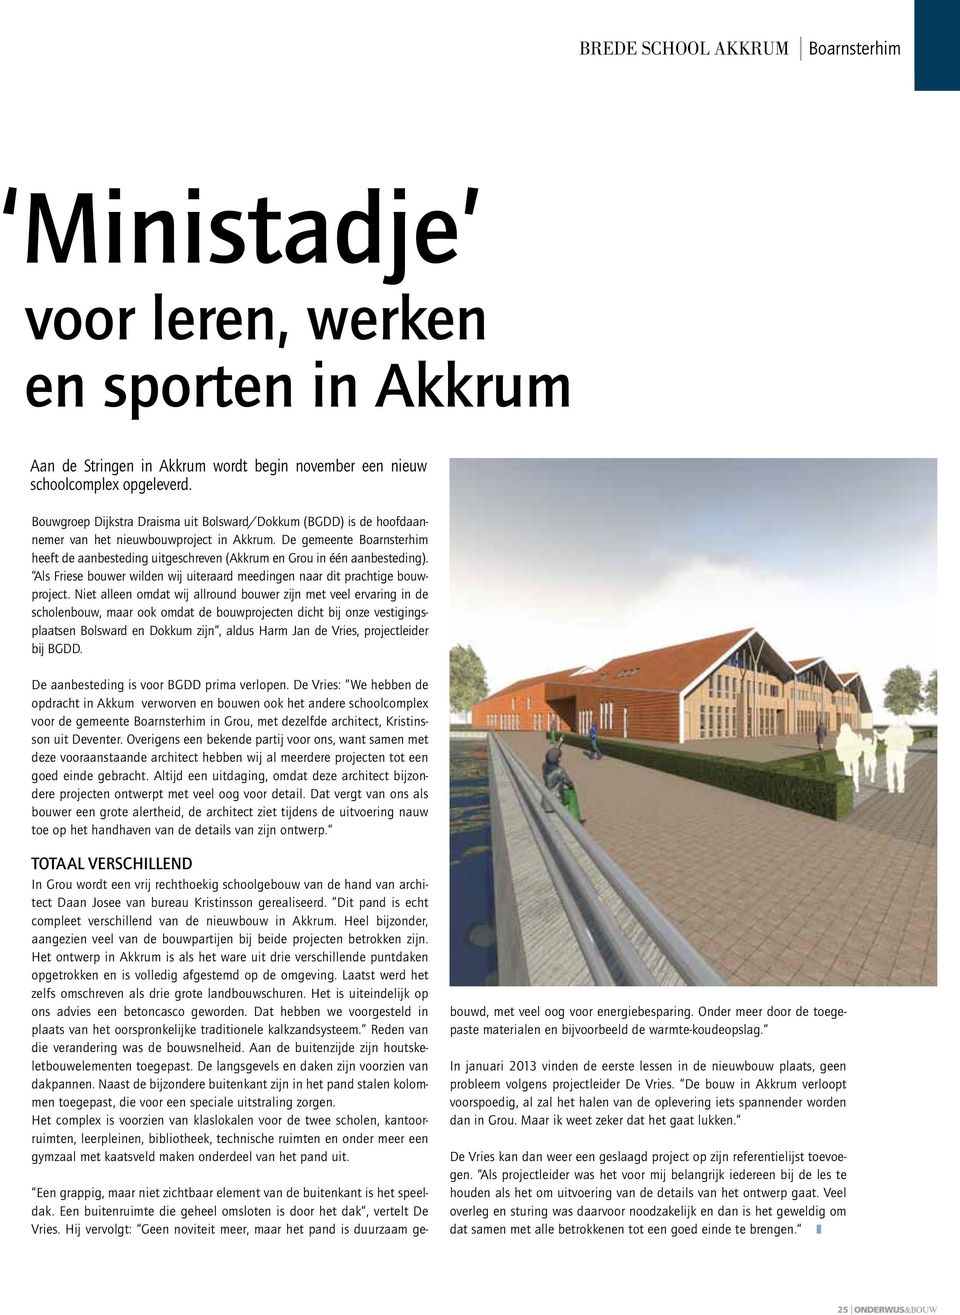 De gemeente Boarnsterhim heeft de aanbesteding uitgeschreven (Akkrum en Grou in één aanbesteding). Als Friese bouwer wilden wij uiteraard meedingen naar dit prachtige bouwproject.